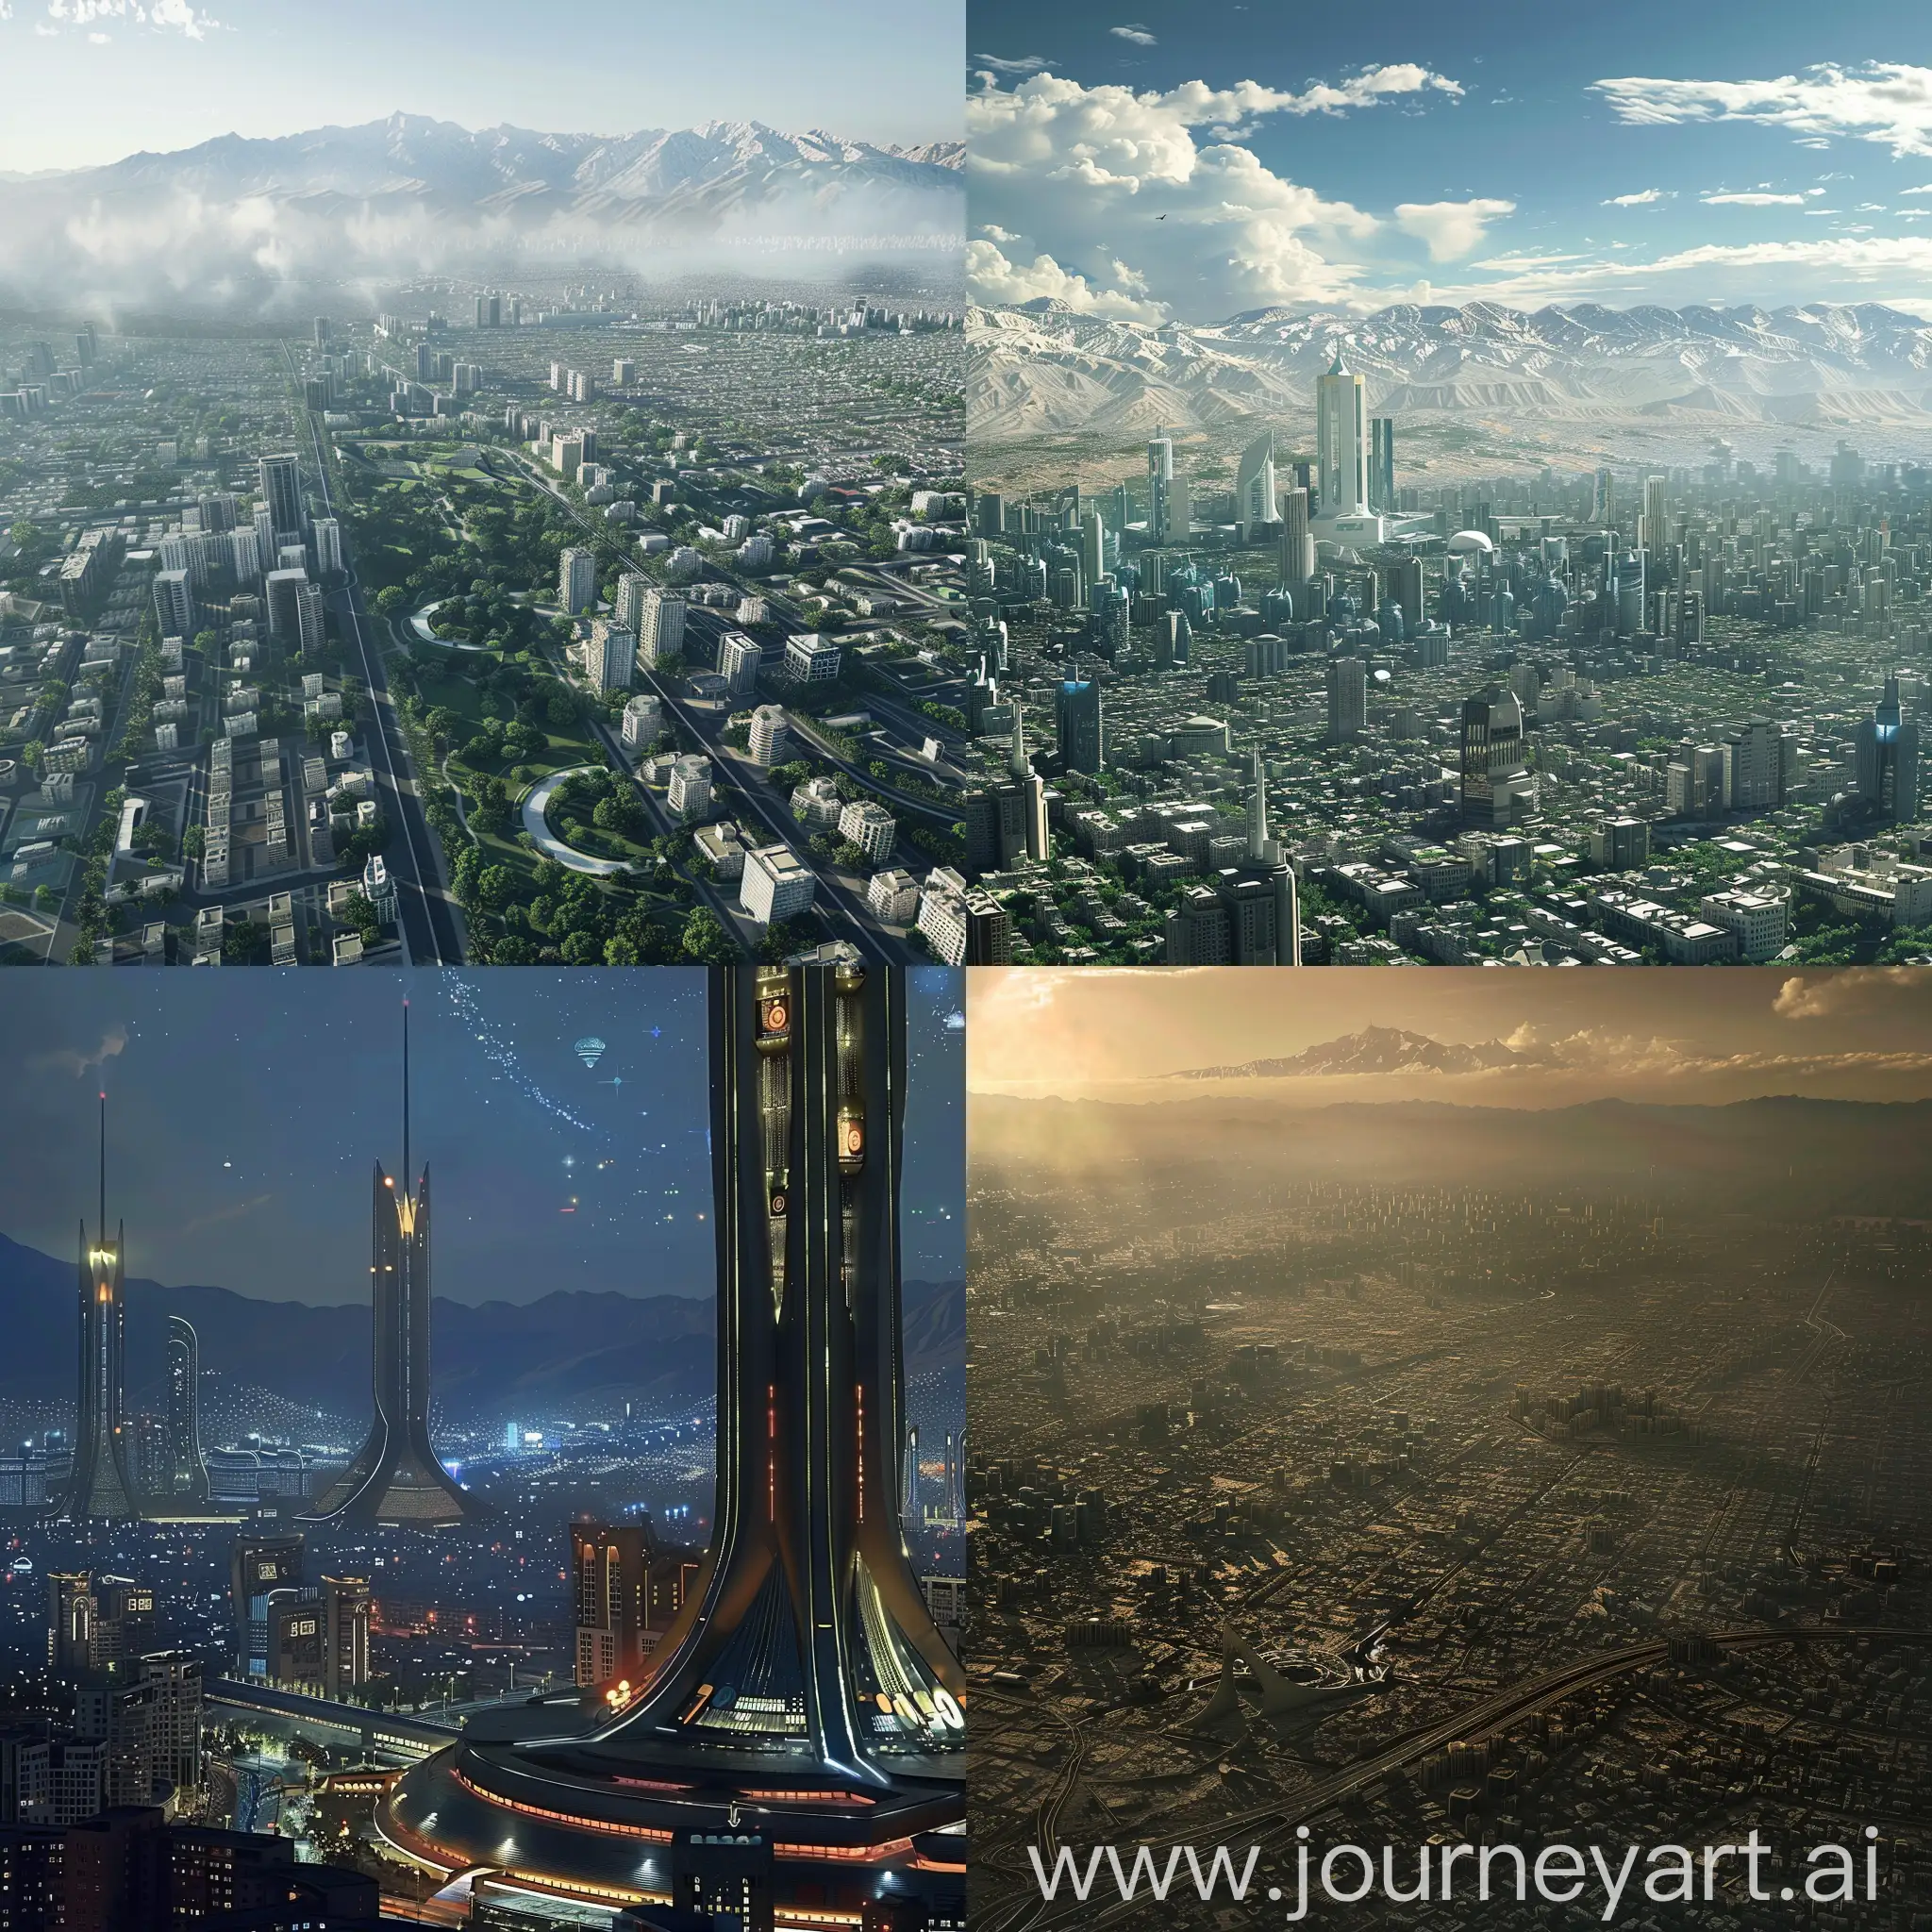 Tehran city in 2050